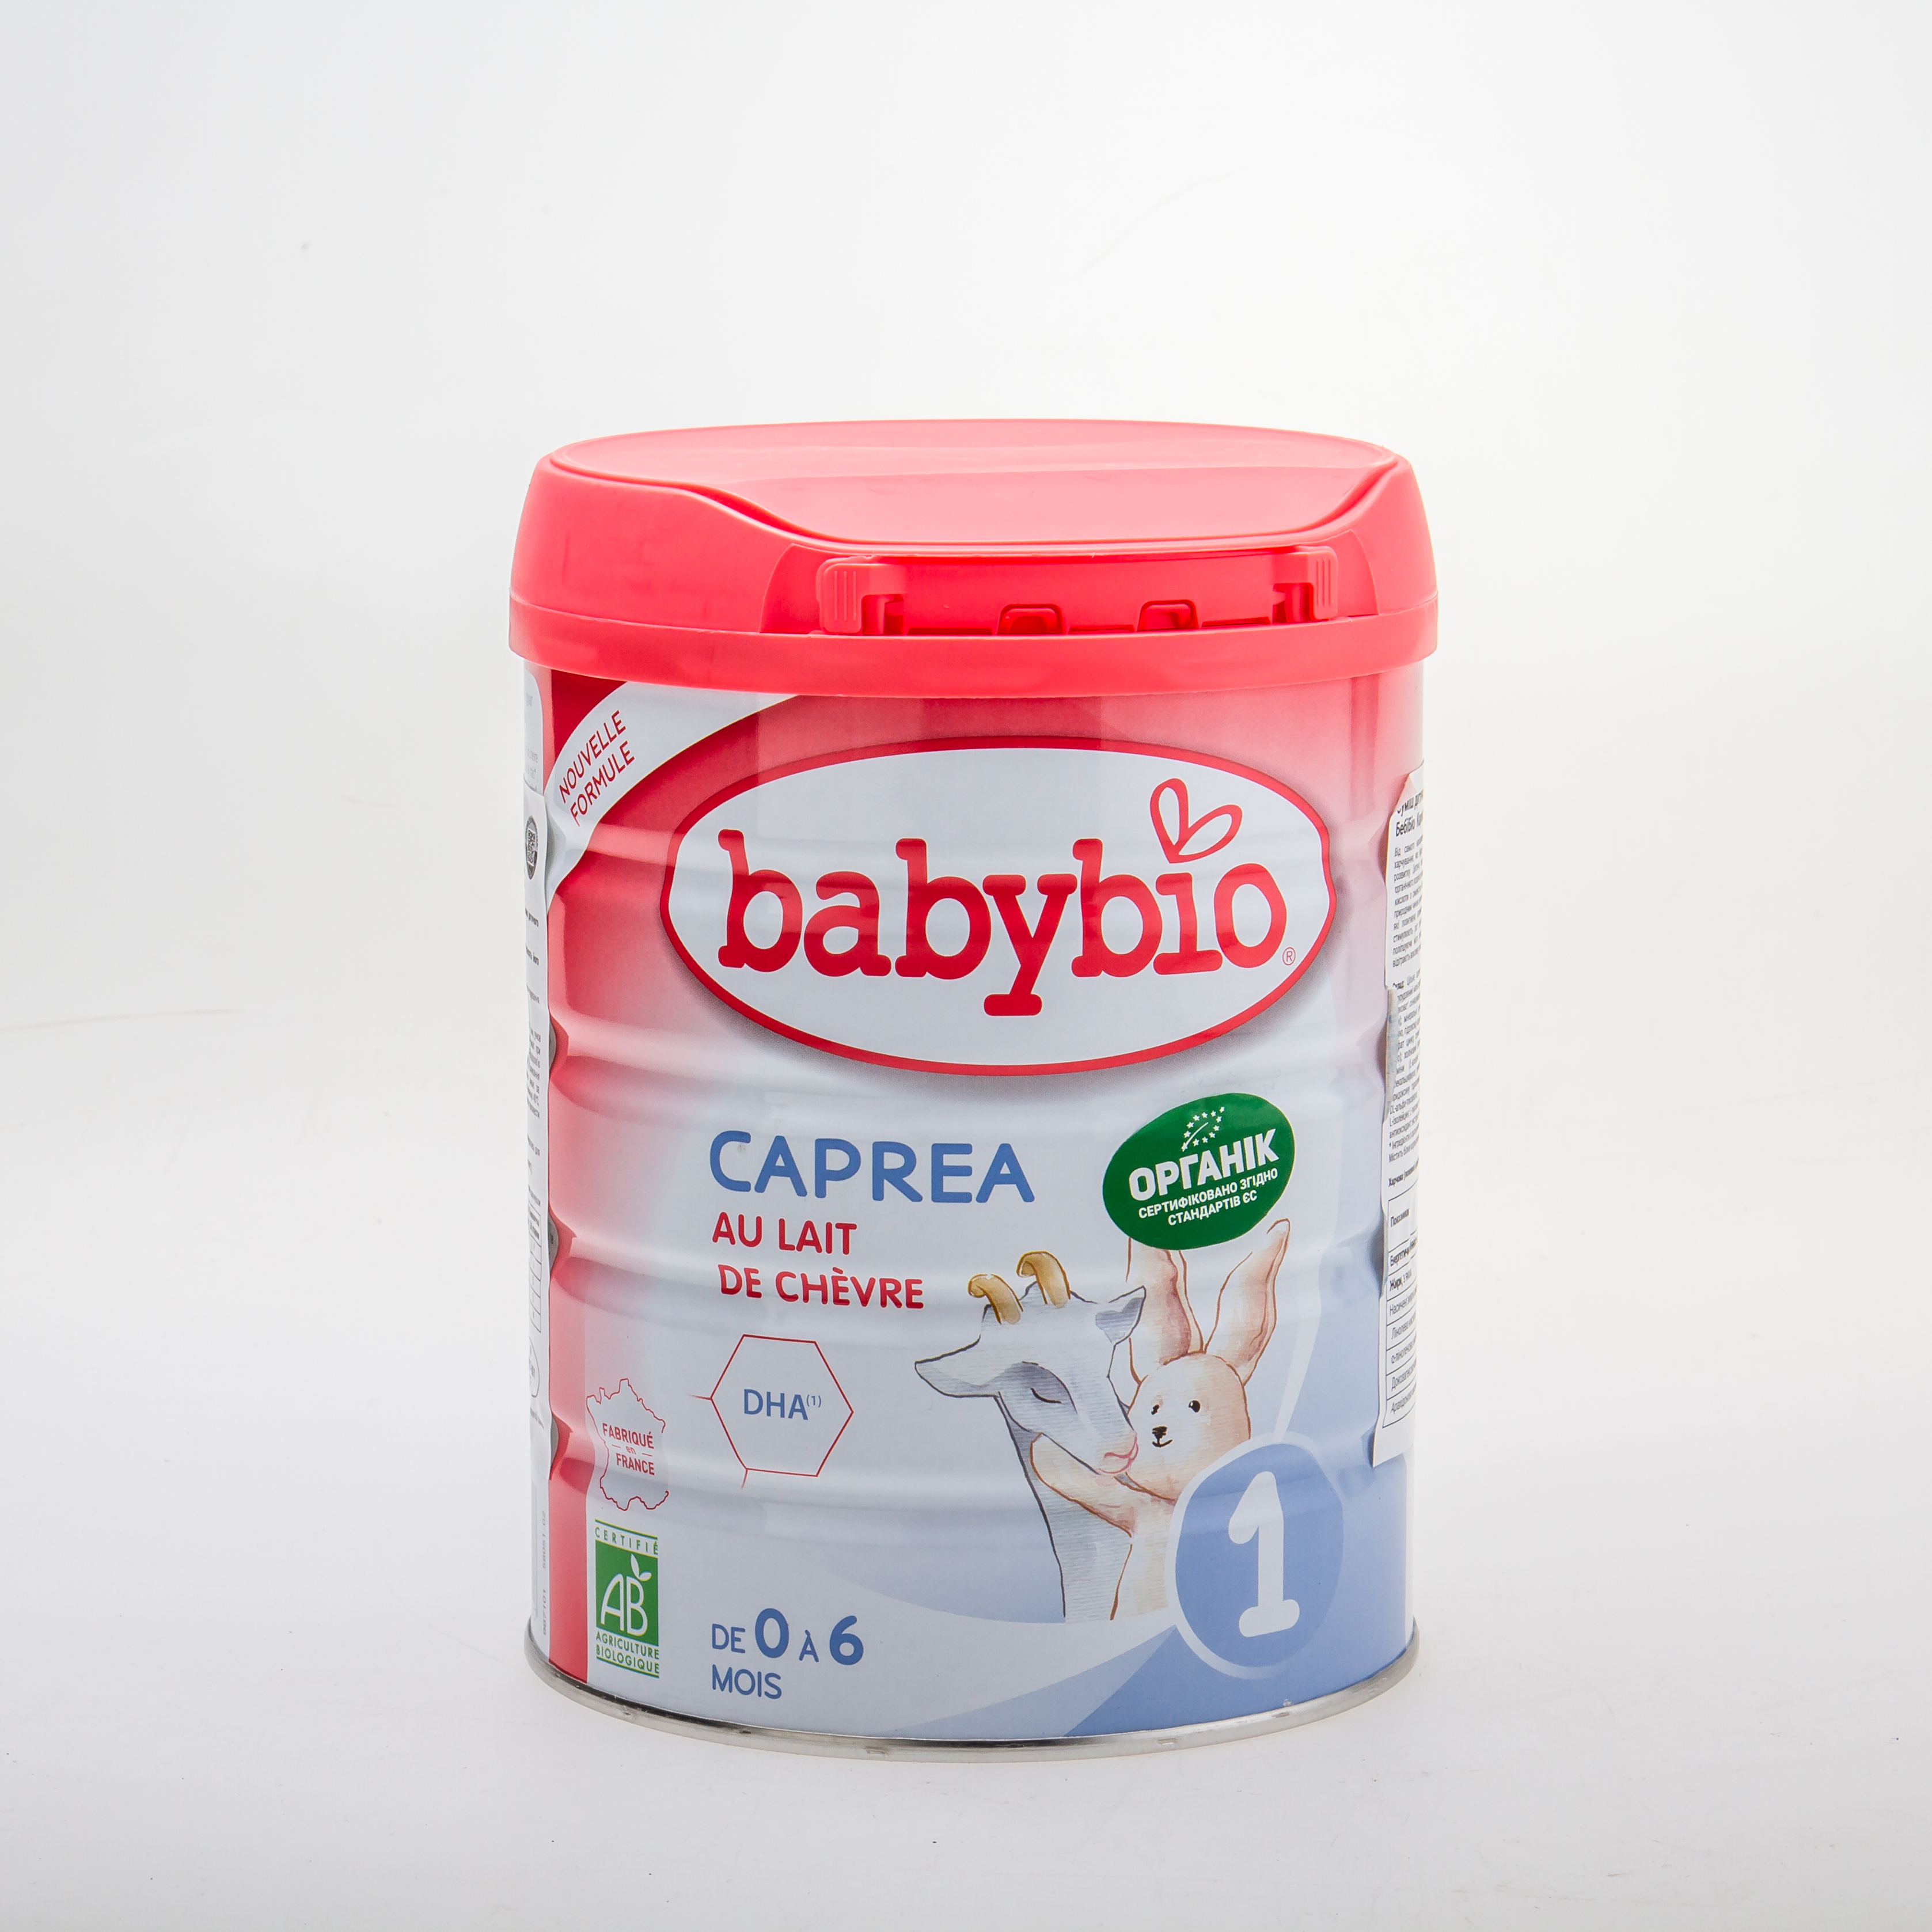 BabyBio Caprea1 Суміш дитяча з козячого молока, органічна   для немовлят  від 0 до 6 місяців - купить в интернет-магазине Юнимед